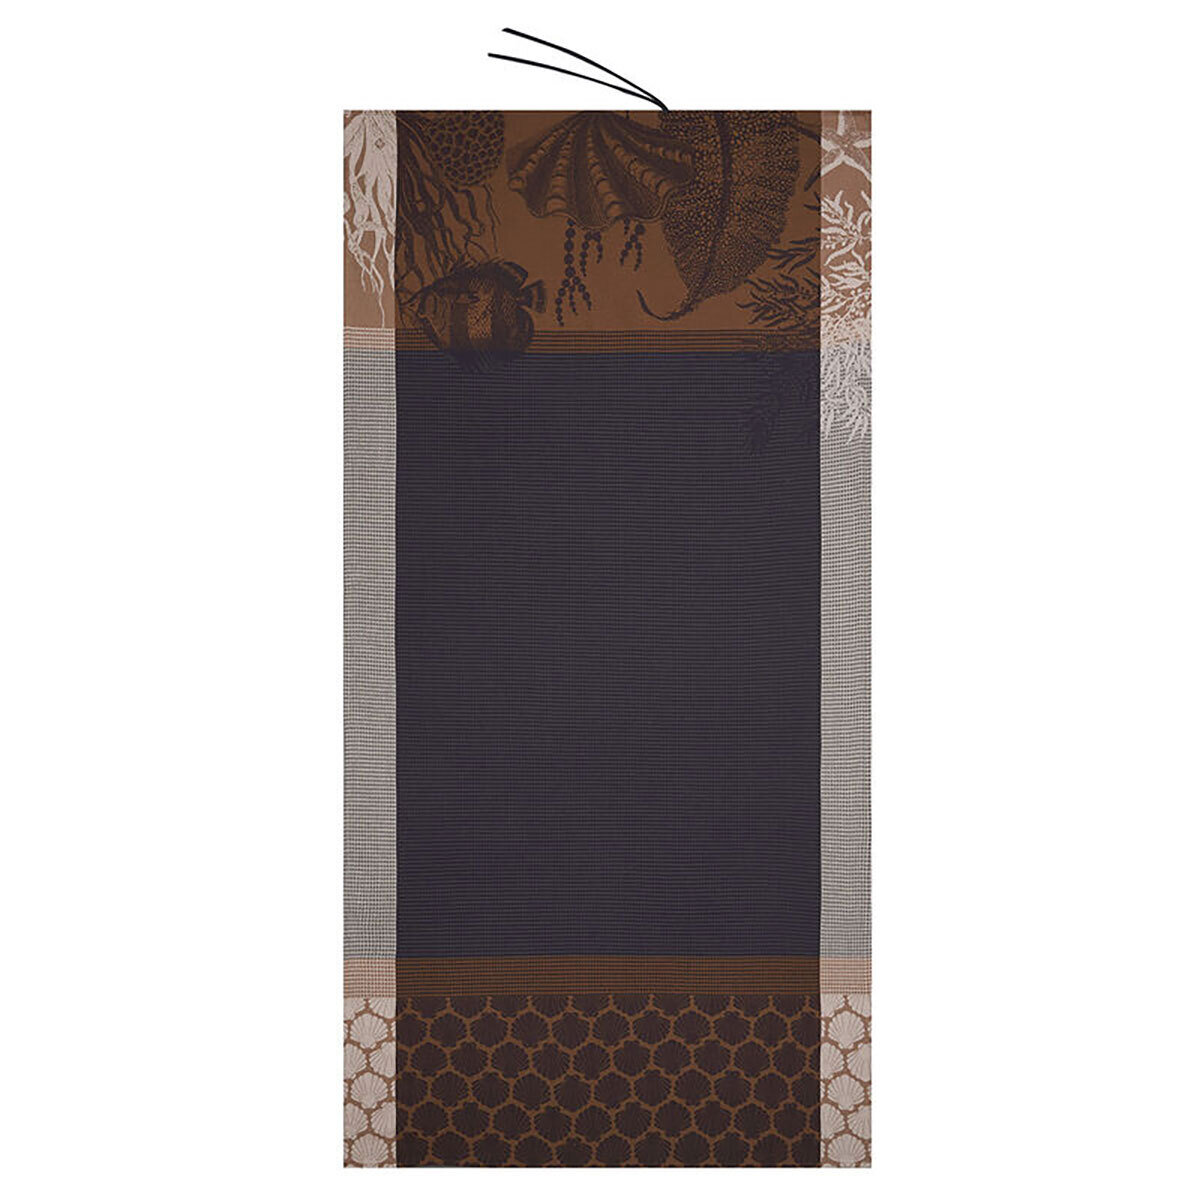 Le Jacquard Francais Recifs Black Beach Towel 39 x 79 Inch 27464